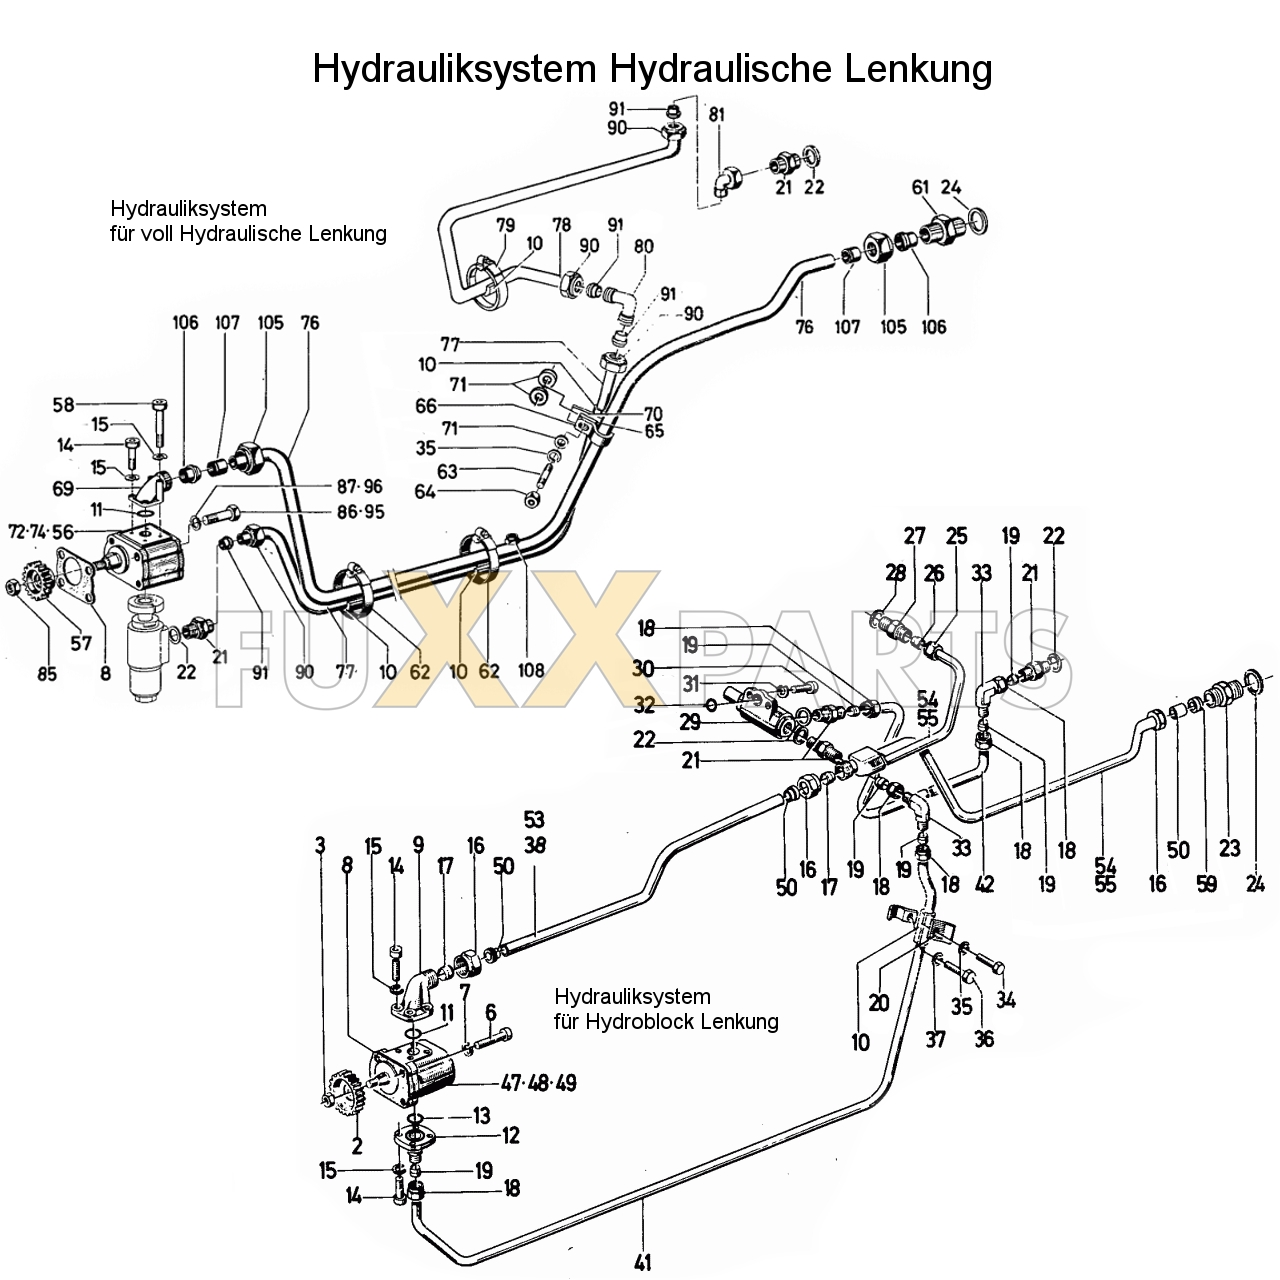 D 7206 Hydrauliksystem Hydraulische Lenkung